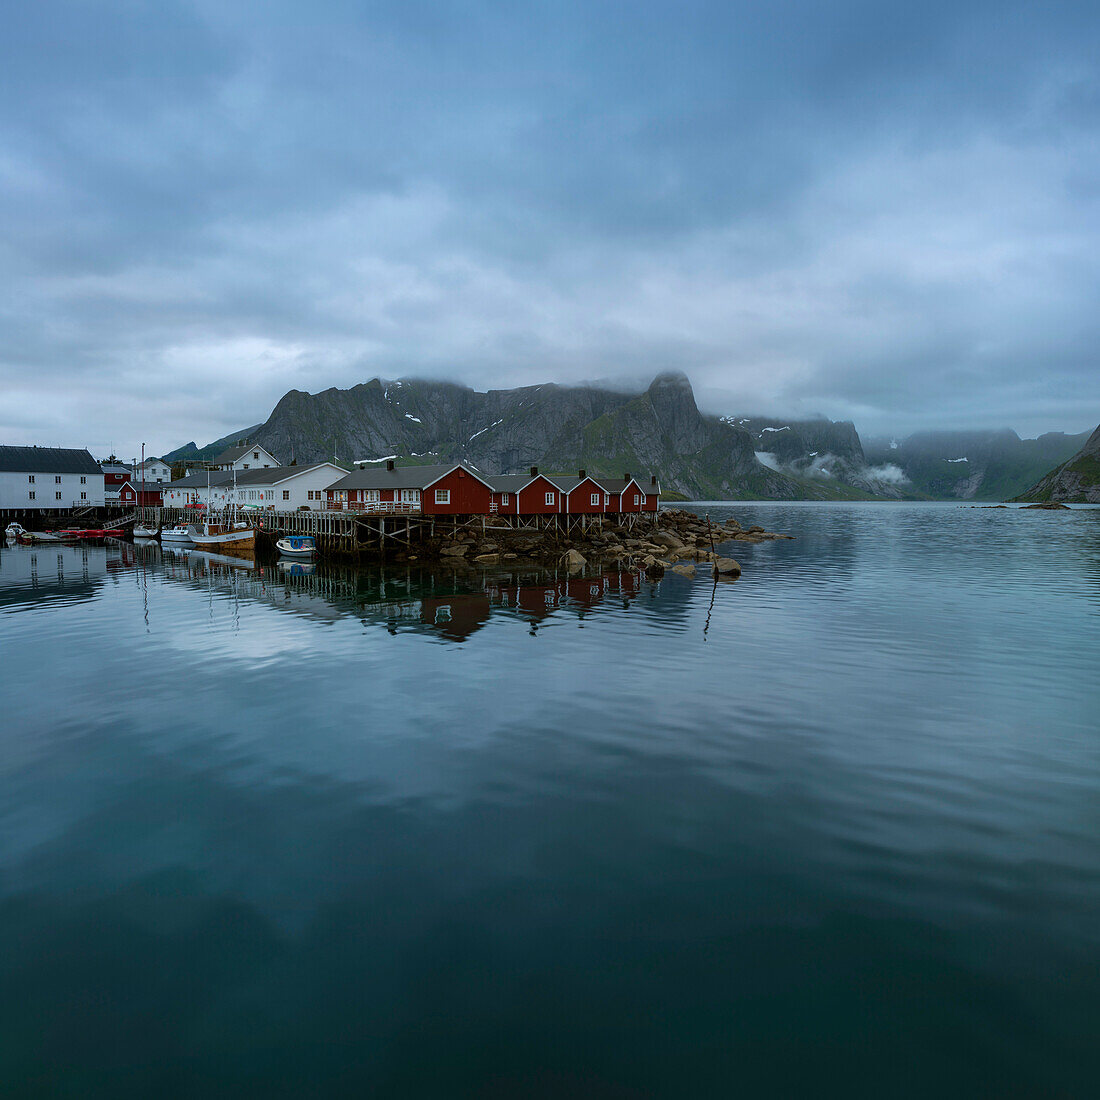 Traditional Rorbuer coastal cabins at HamnÃ¸y, Lofoten Islands, Norway